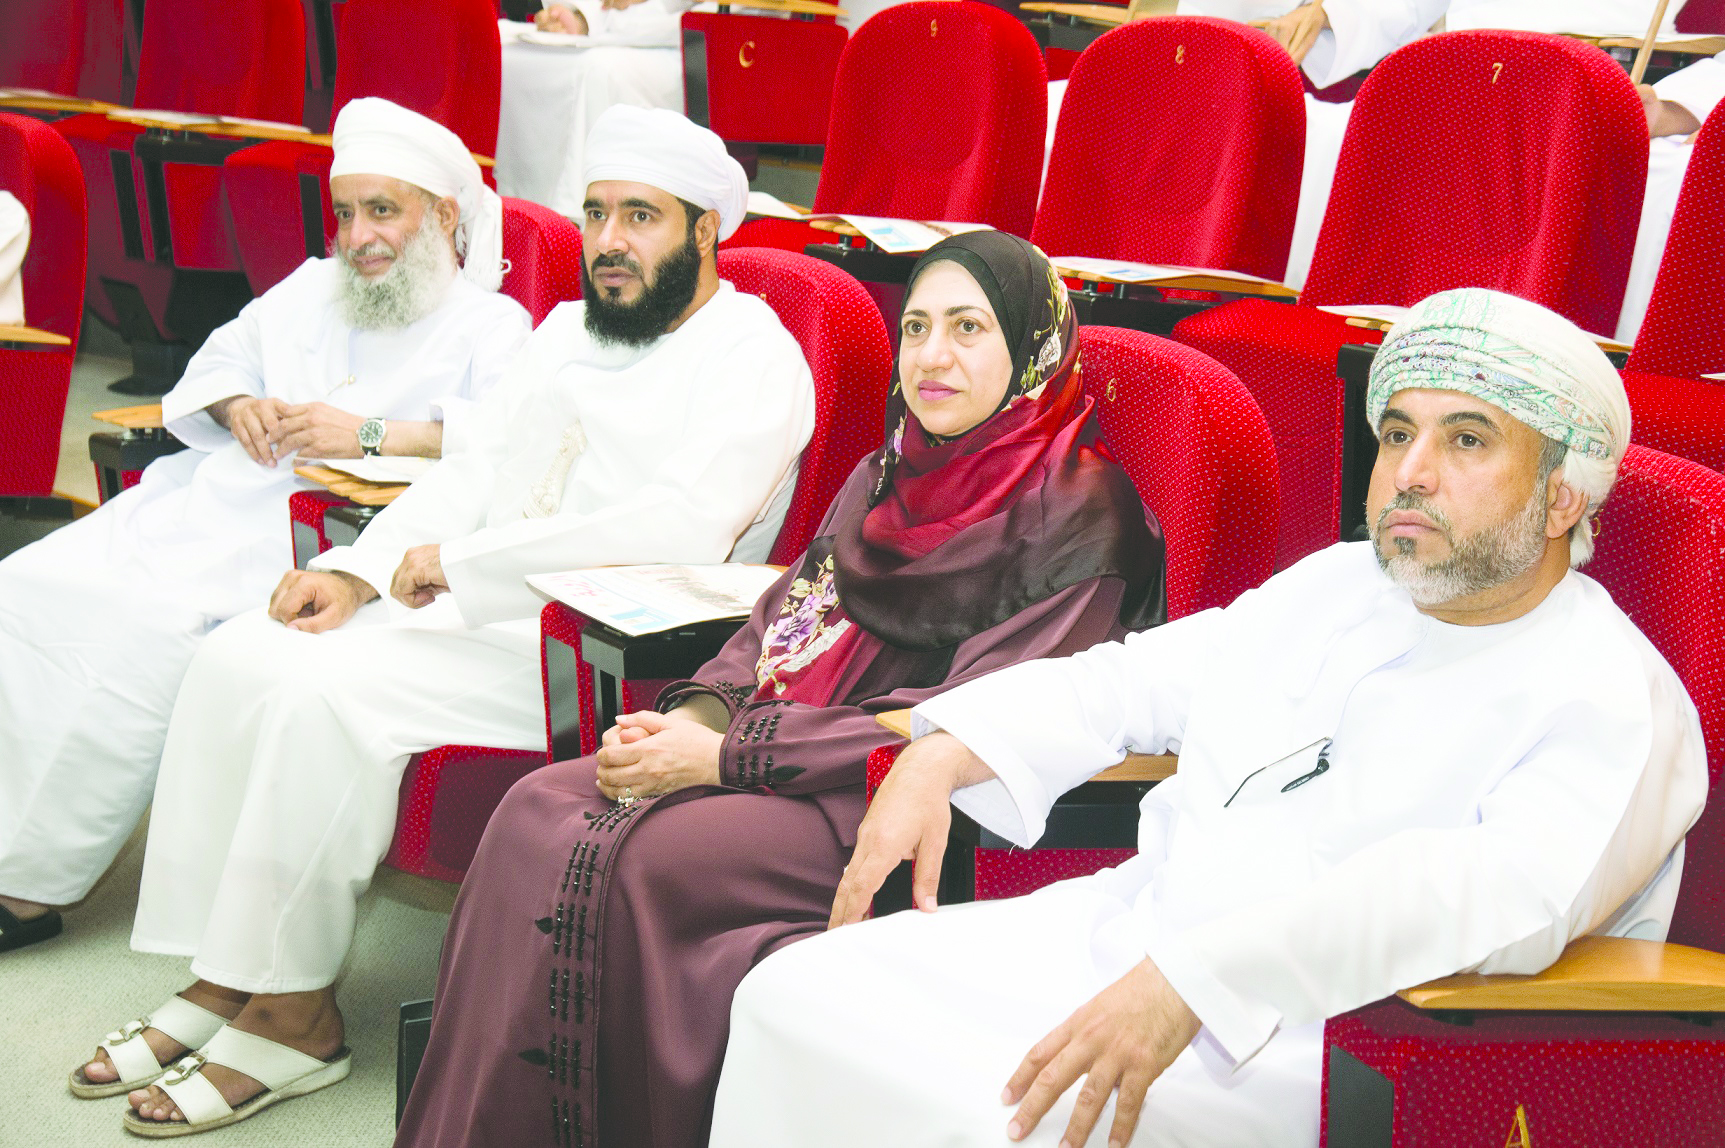 محاضرة في جامعة السلطان قابوس

مسيرة معرض رسالة الإسلام من عمان